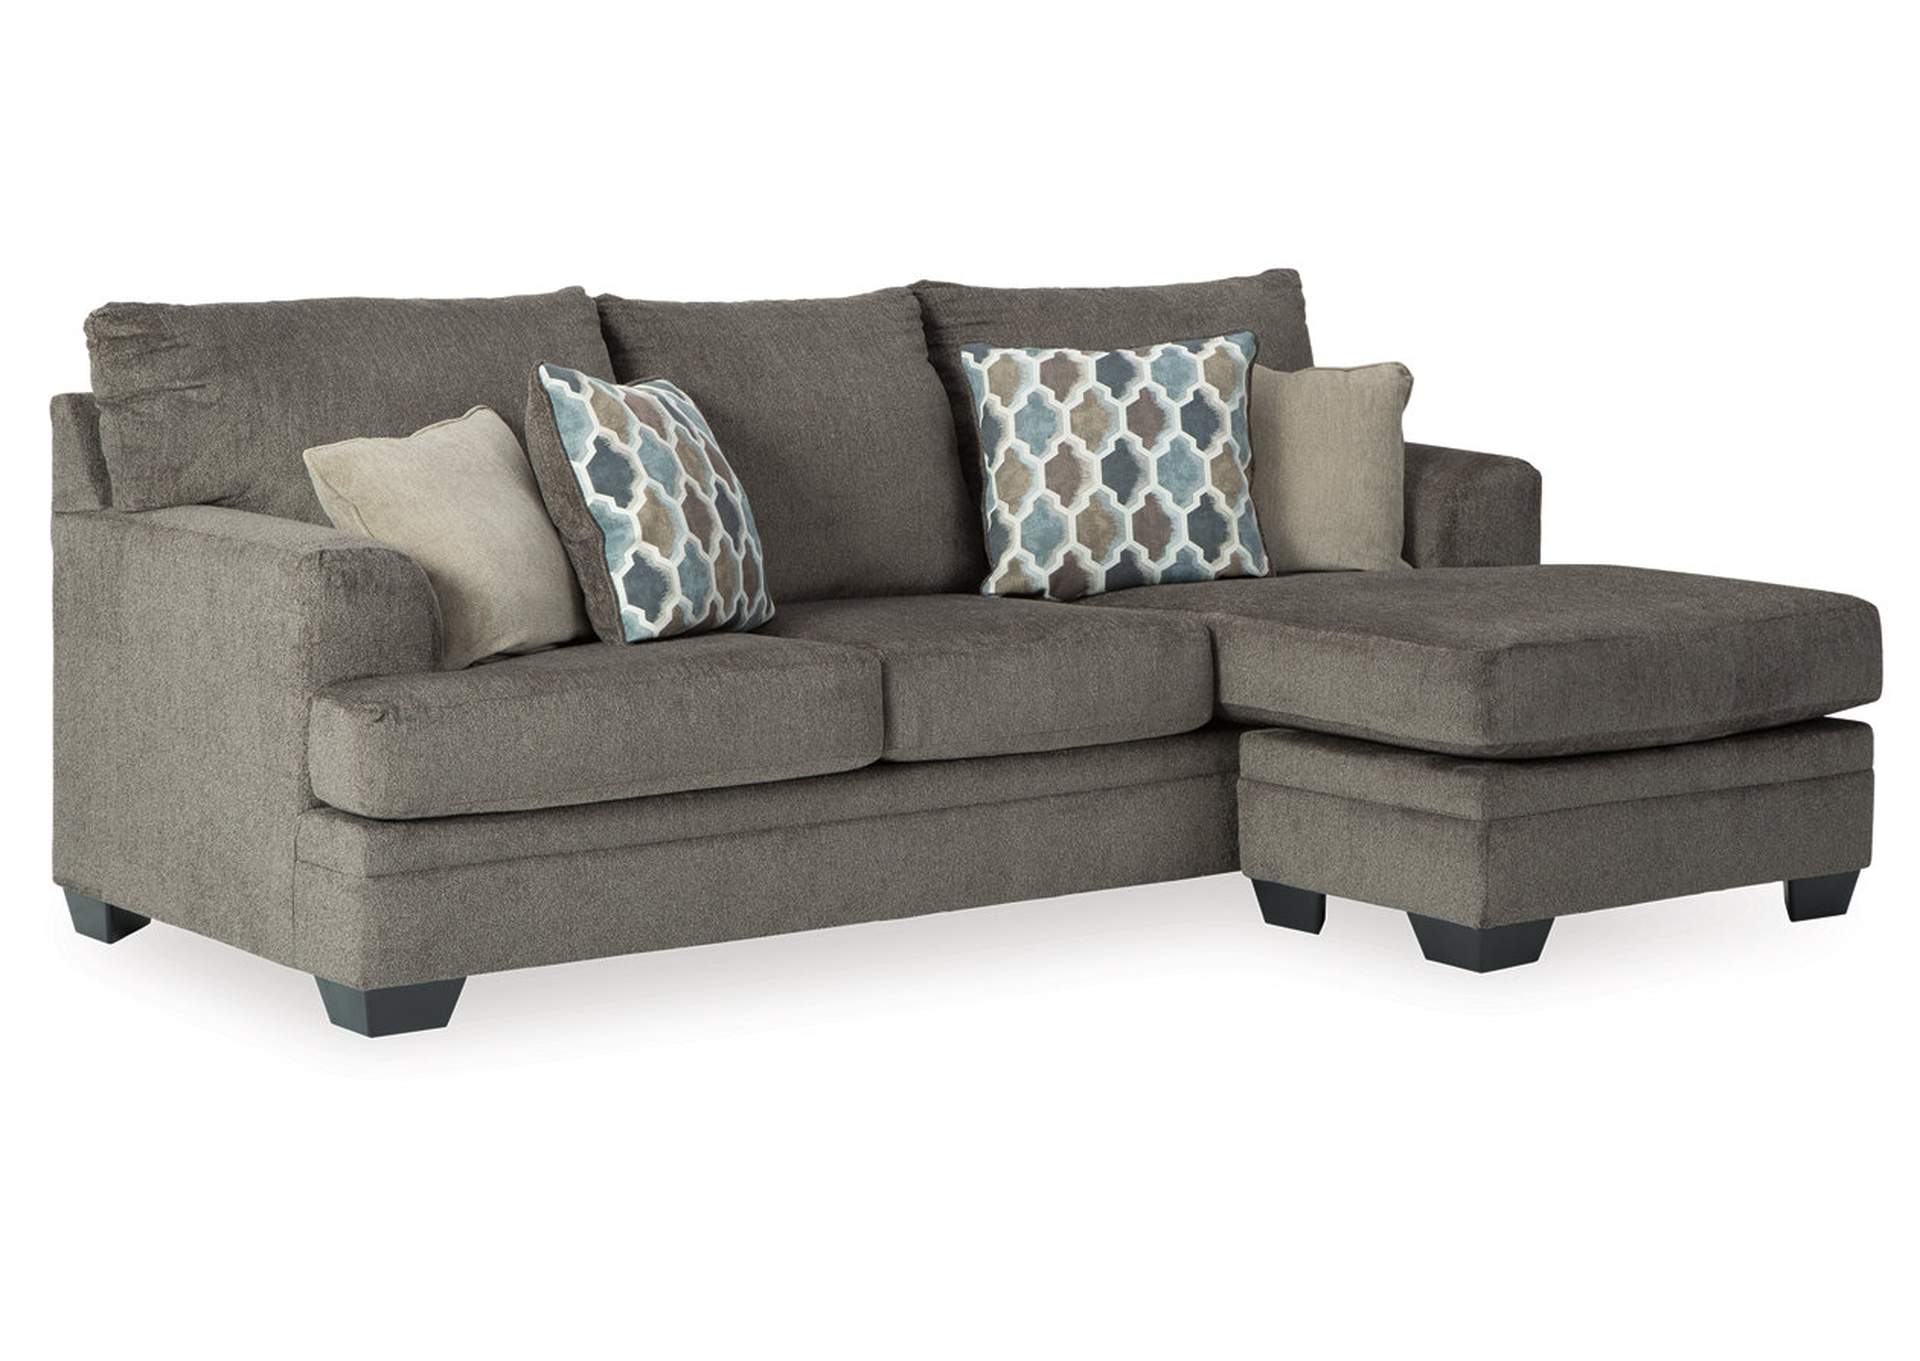 Dorsten Slate Sofa Chaise Ashley Furniture Homestore